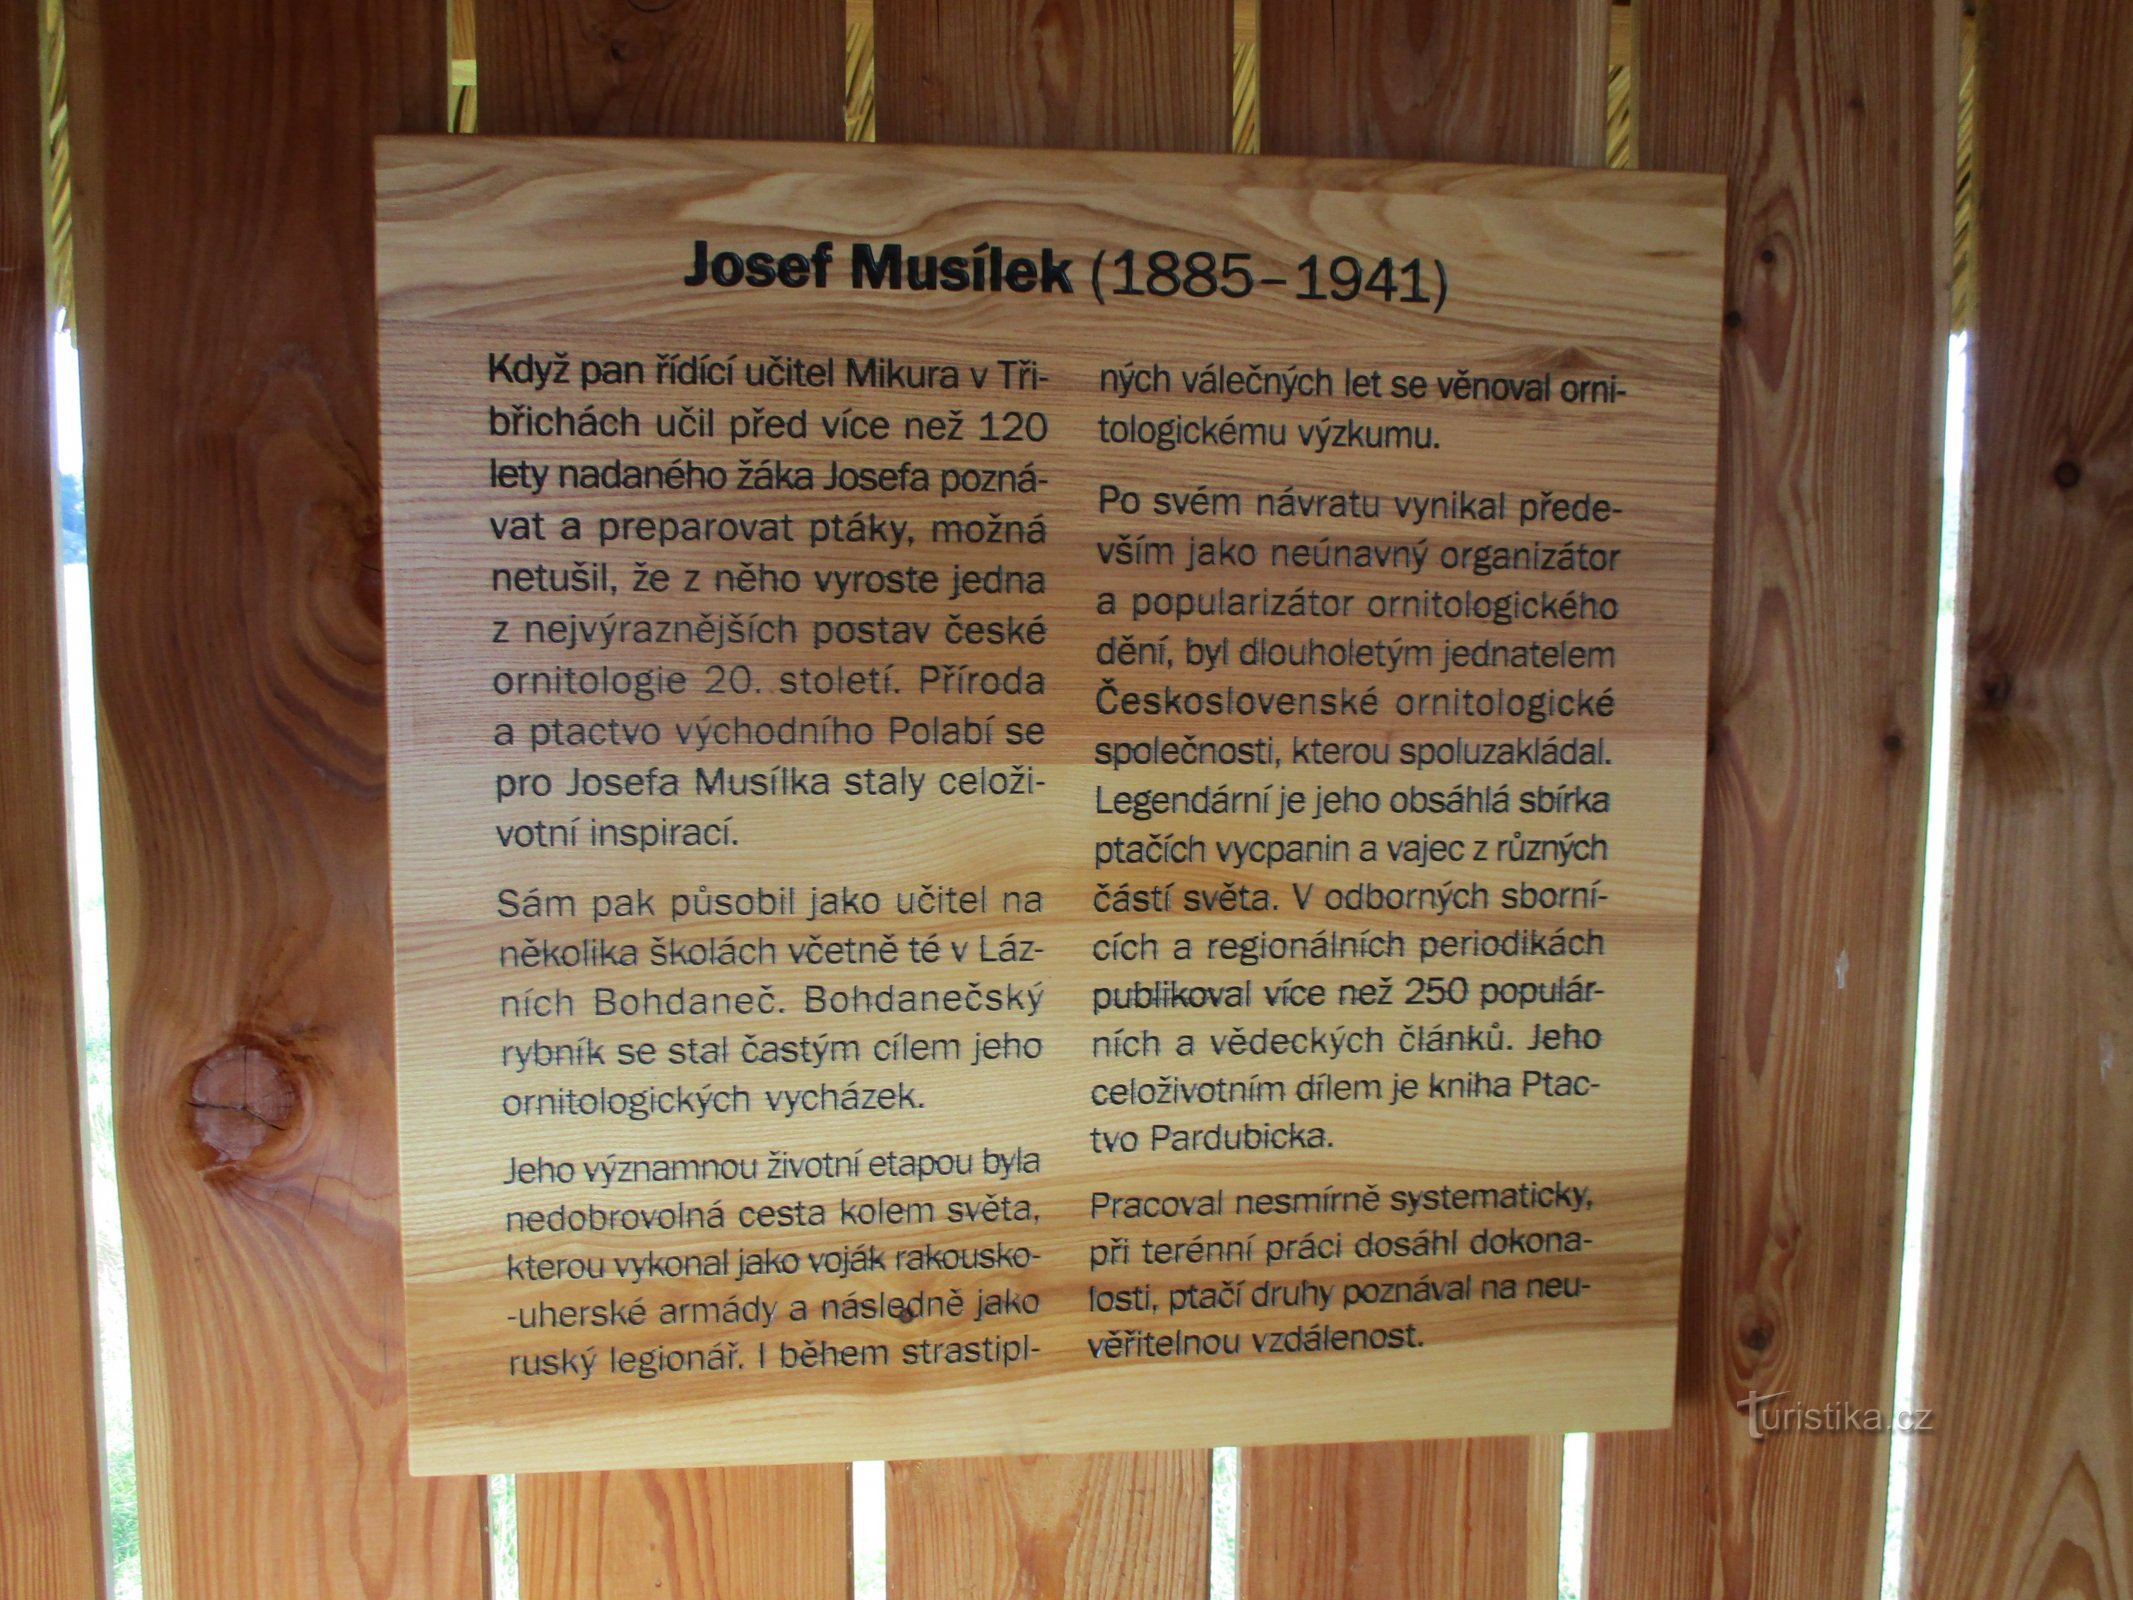 Musílkov observatory (Lázně Bohdaneč)